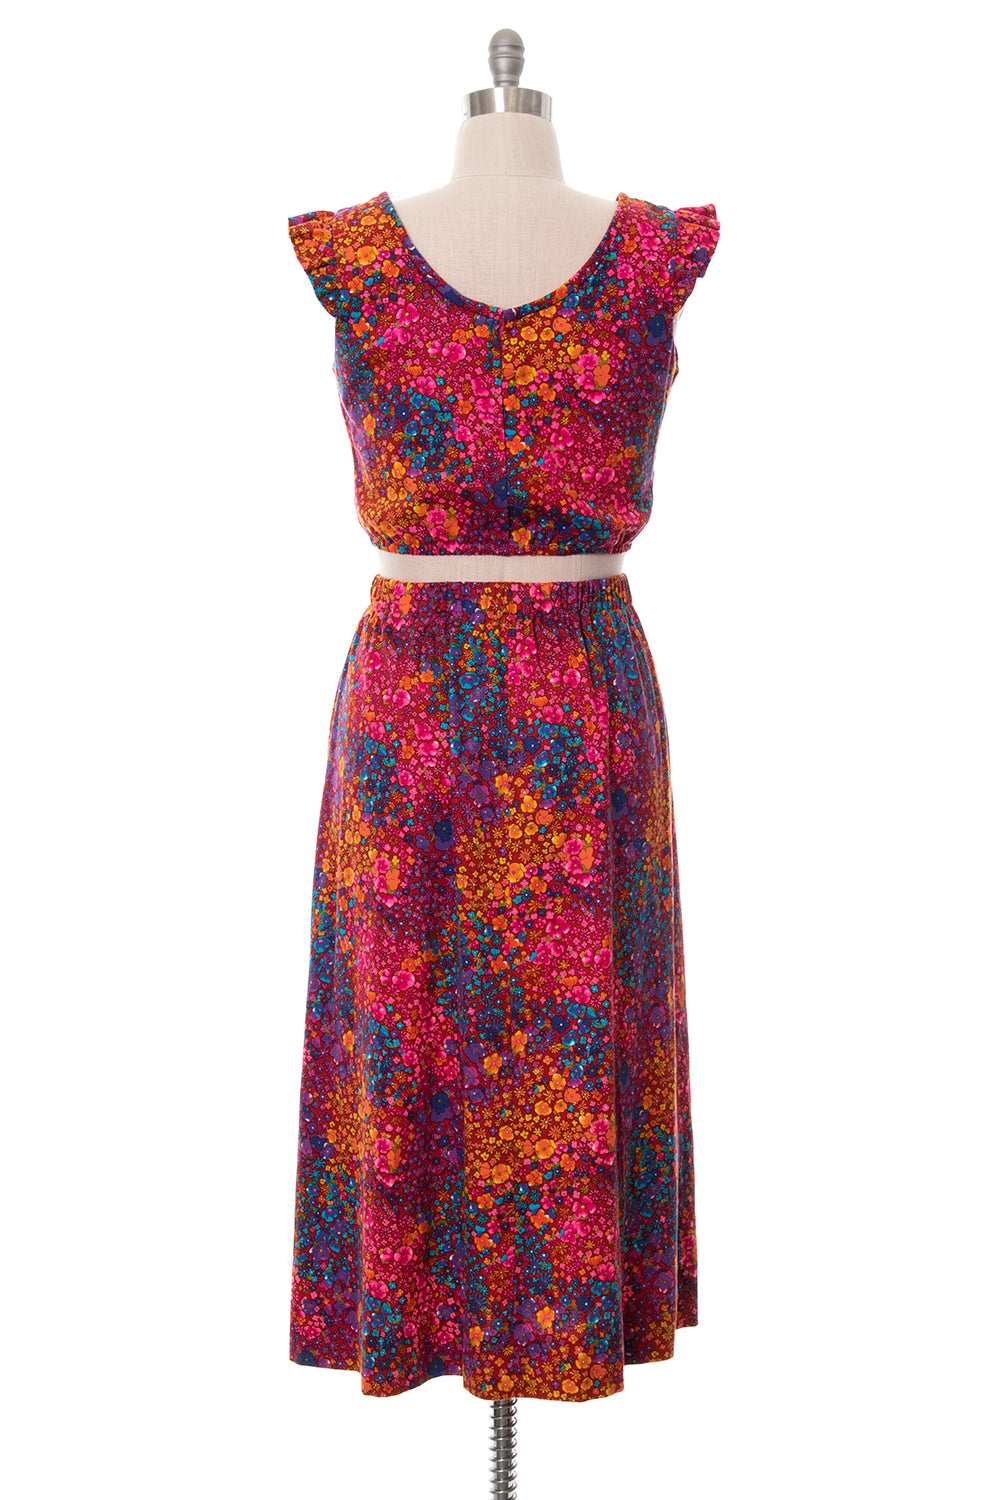 1960s 1970s Floral Barkcloth Top & Skirt Set | small/medium/large